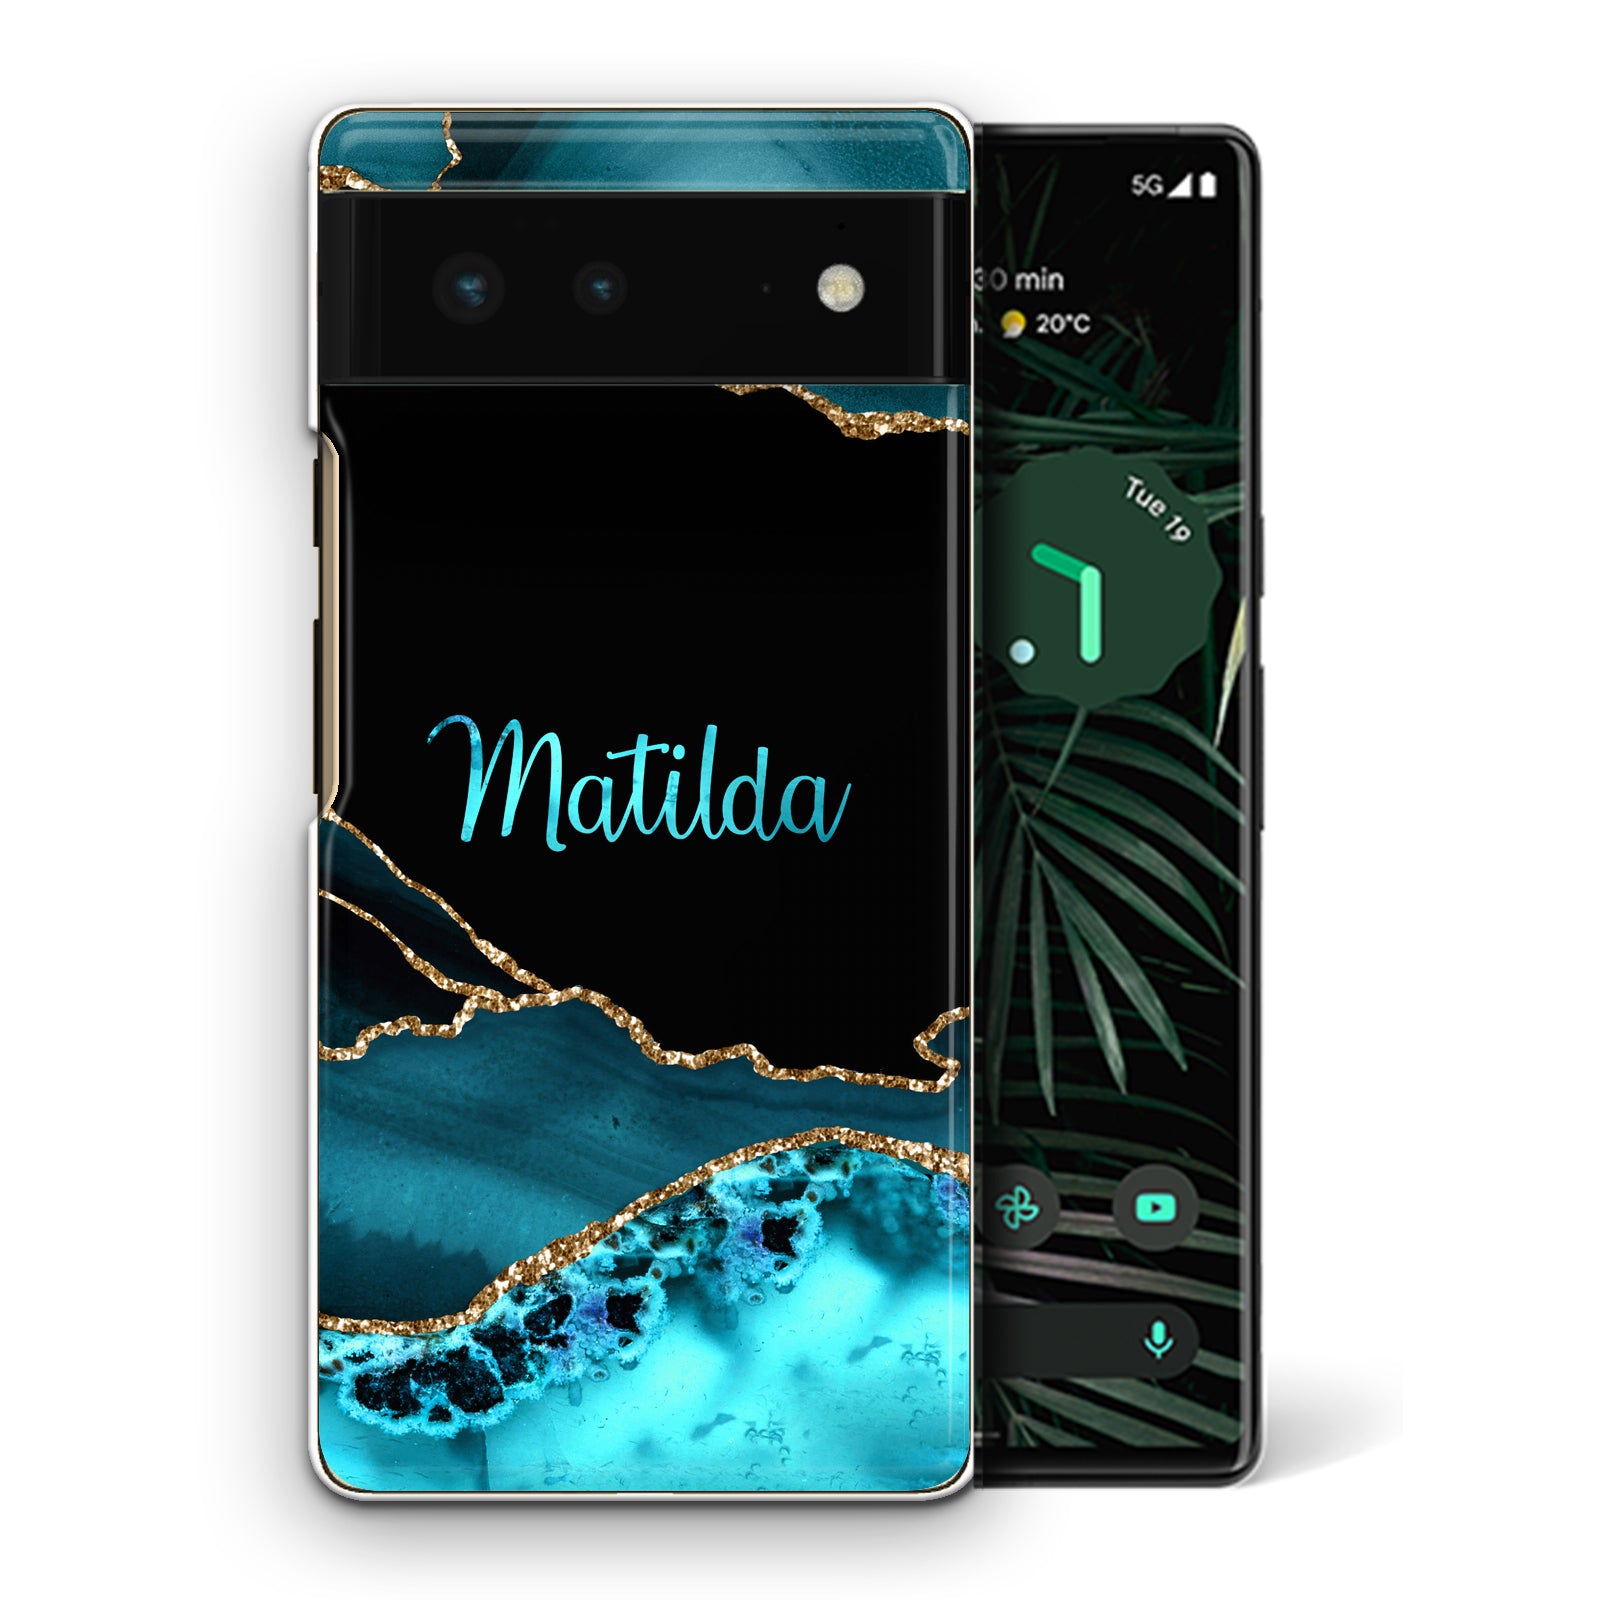 Personalised Google Phone Hard Case with Stylish Name on Turquoise Swirl Marble